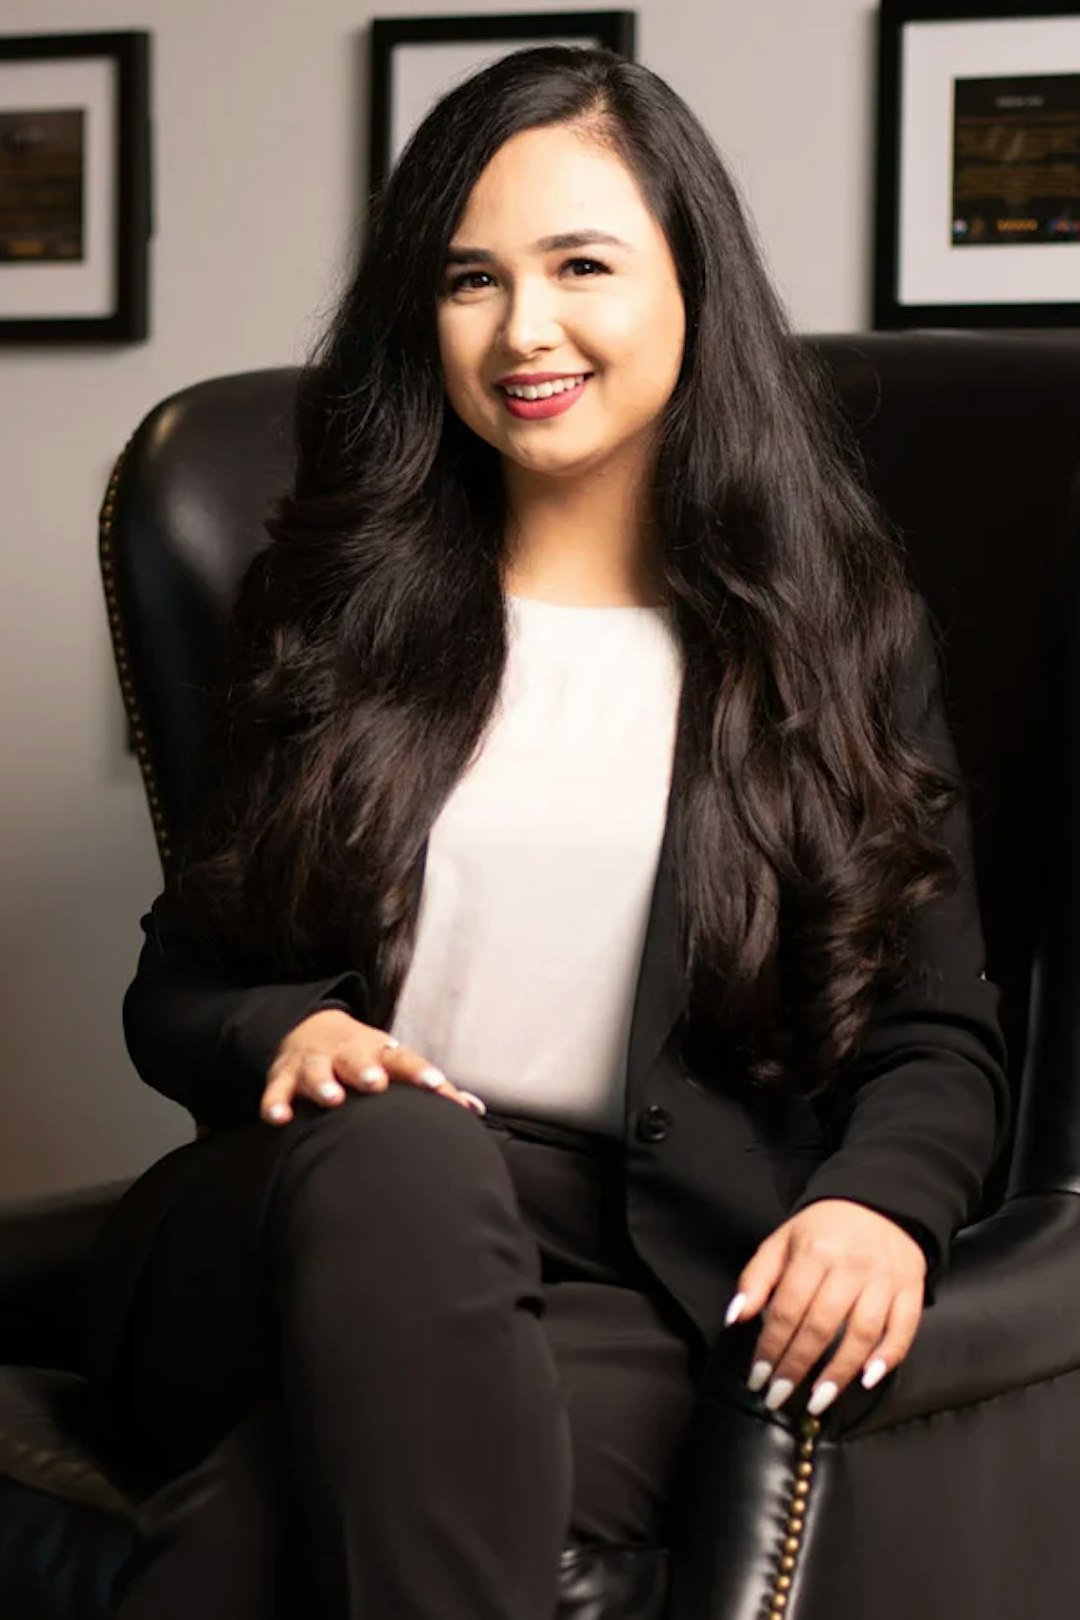 Maria Hussain